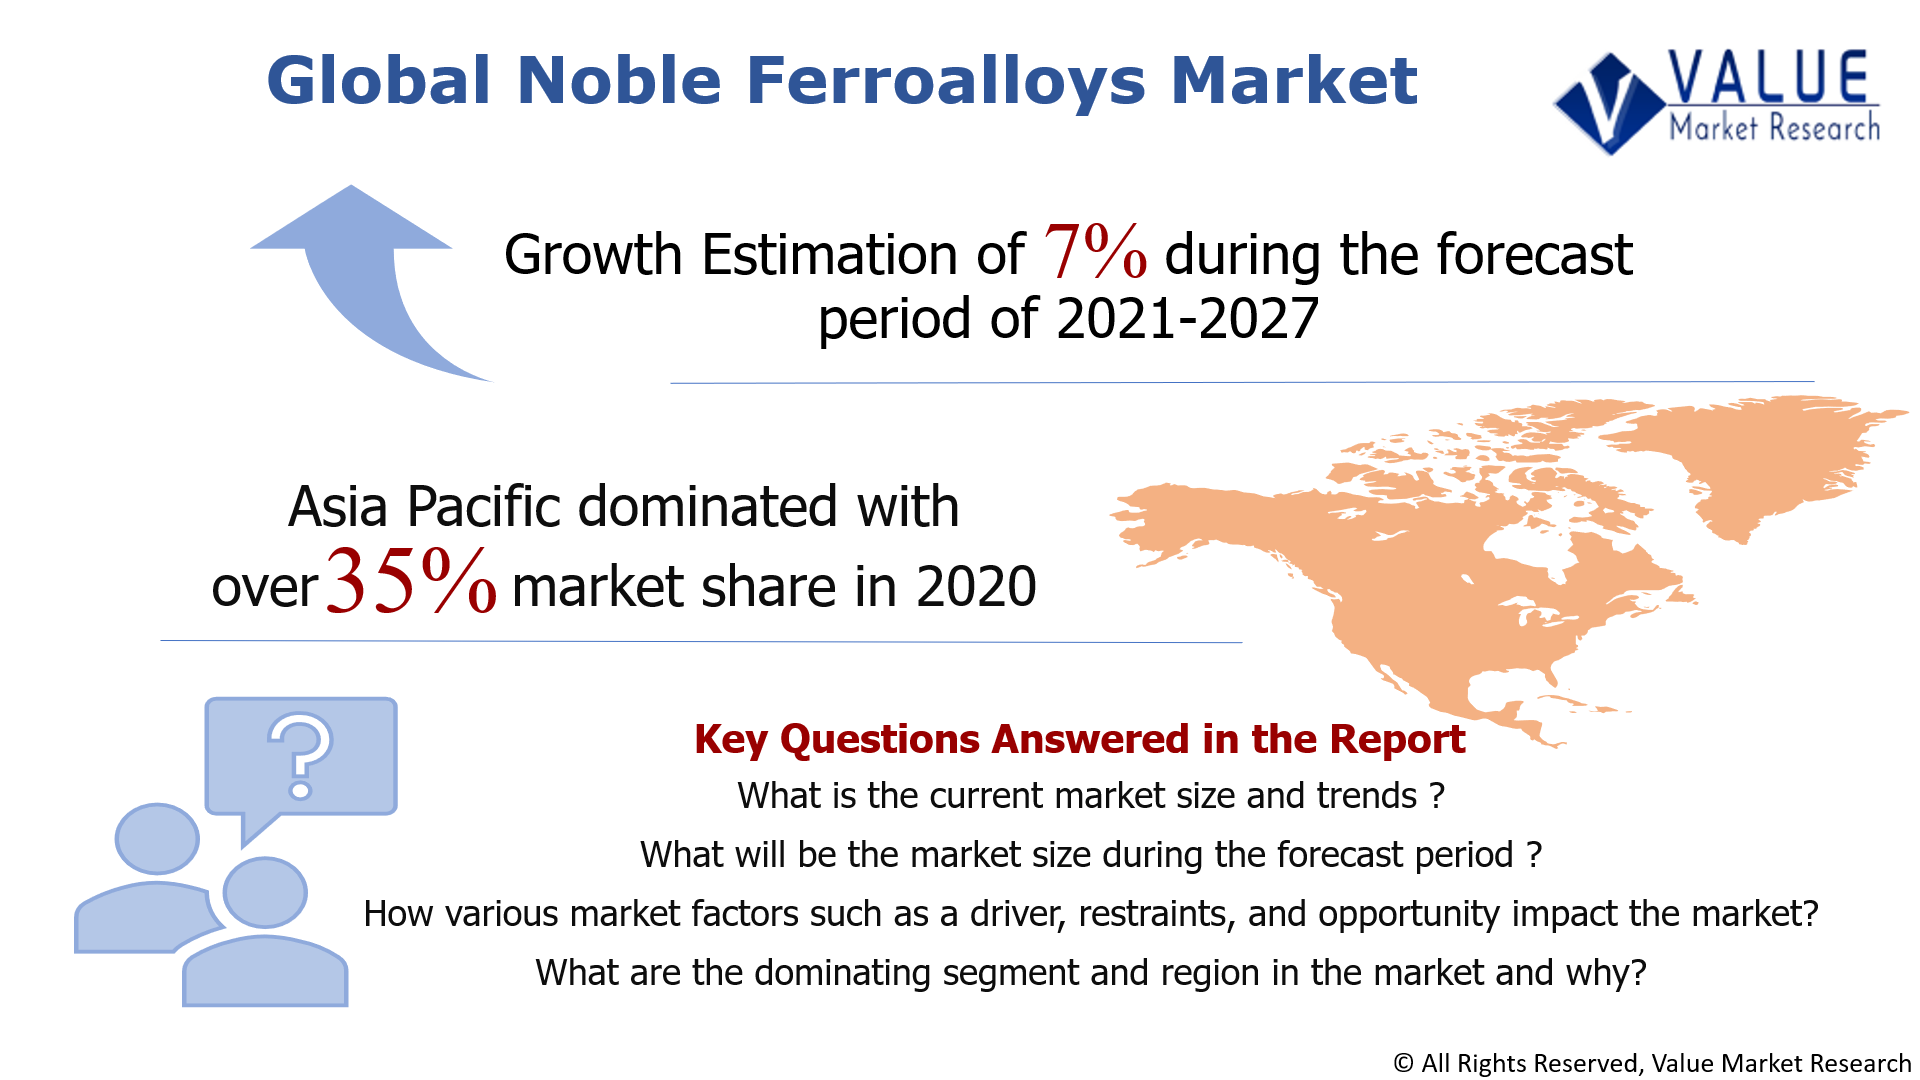 Global Noble Ferroalloys Market Share